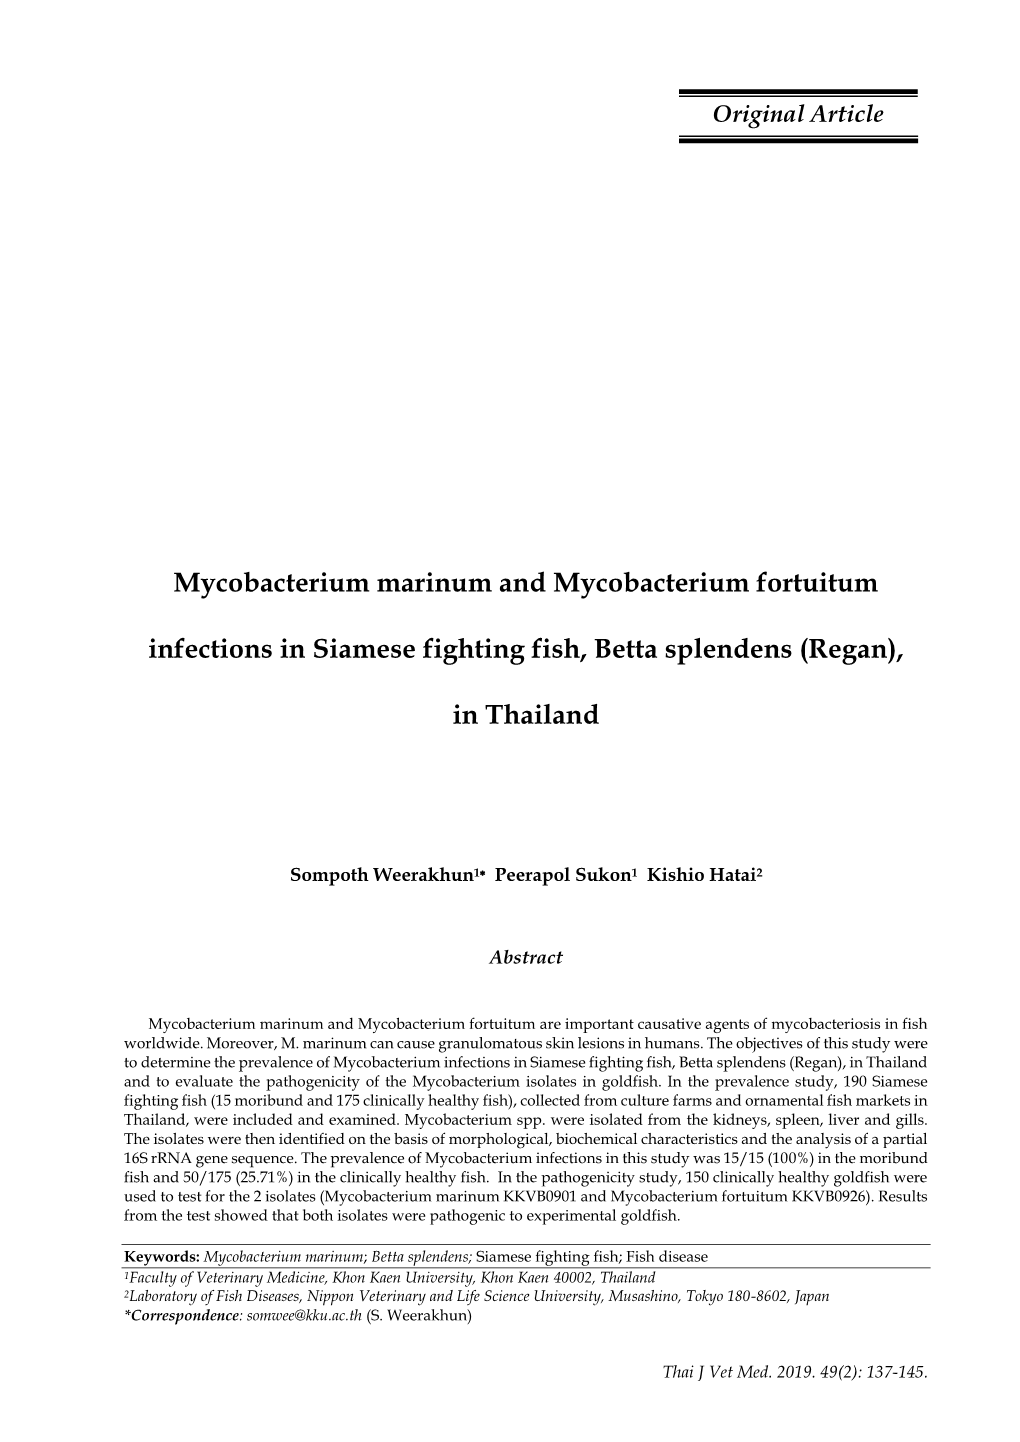 Mycobacterium Marinum and Mycobacterium Fortuitum Infections in Siamese Fighting Fish, Betta Splendens (Regan), in Thailand